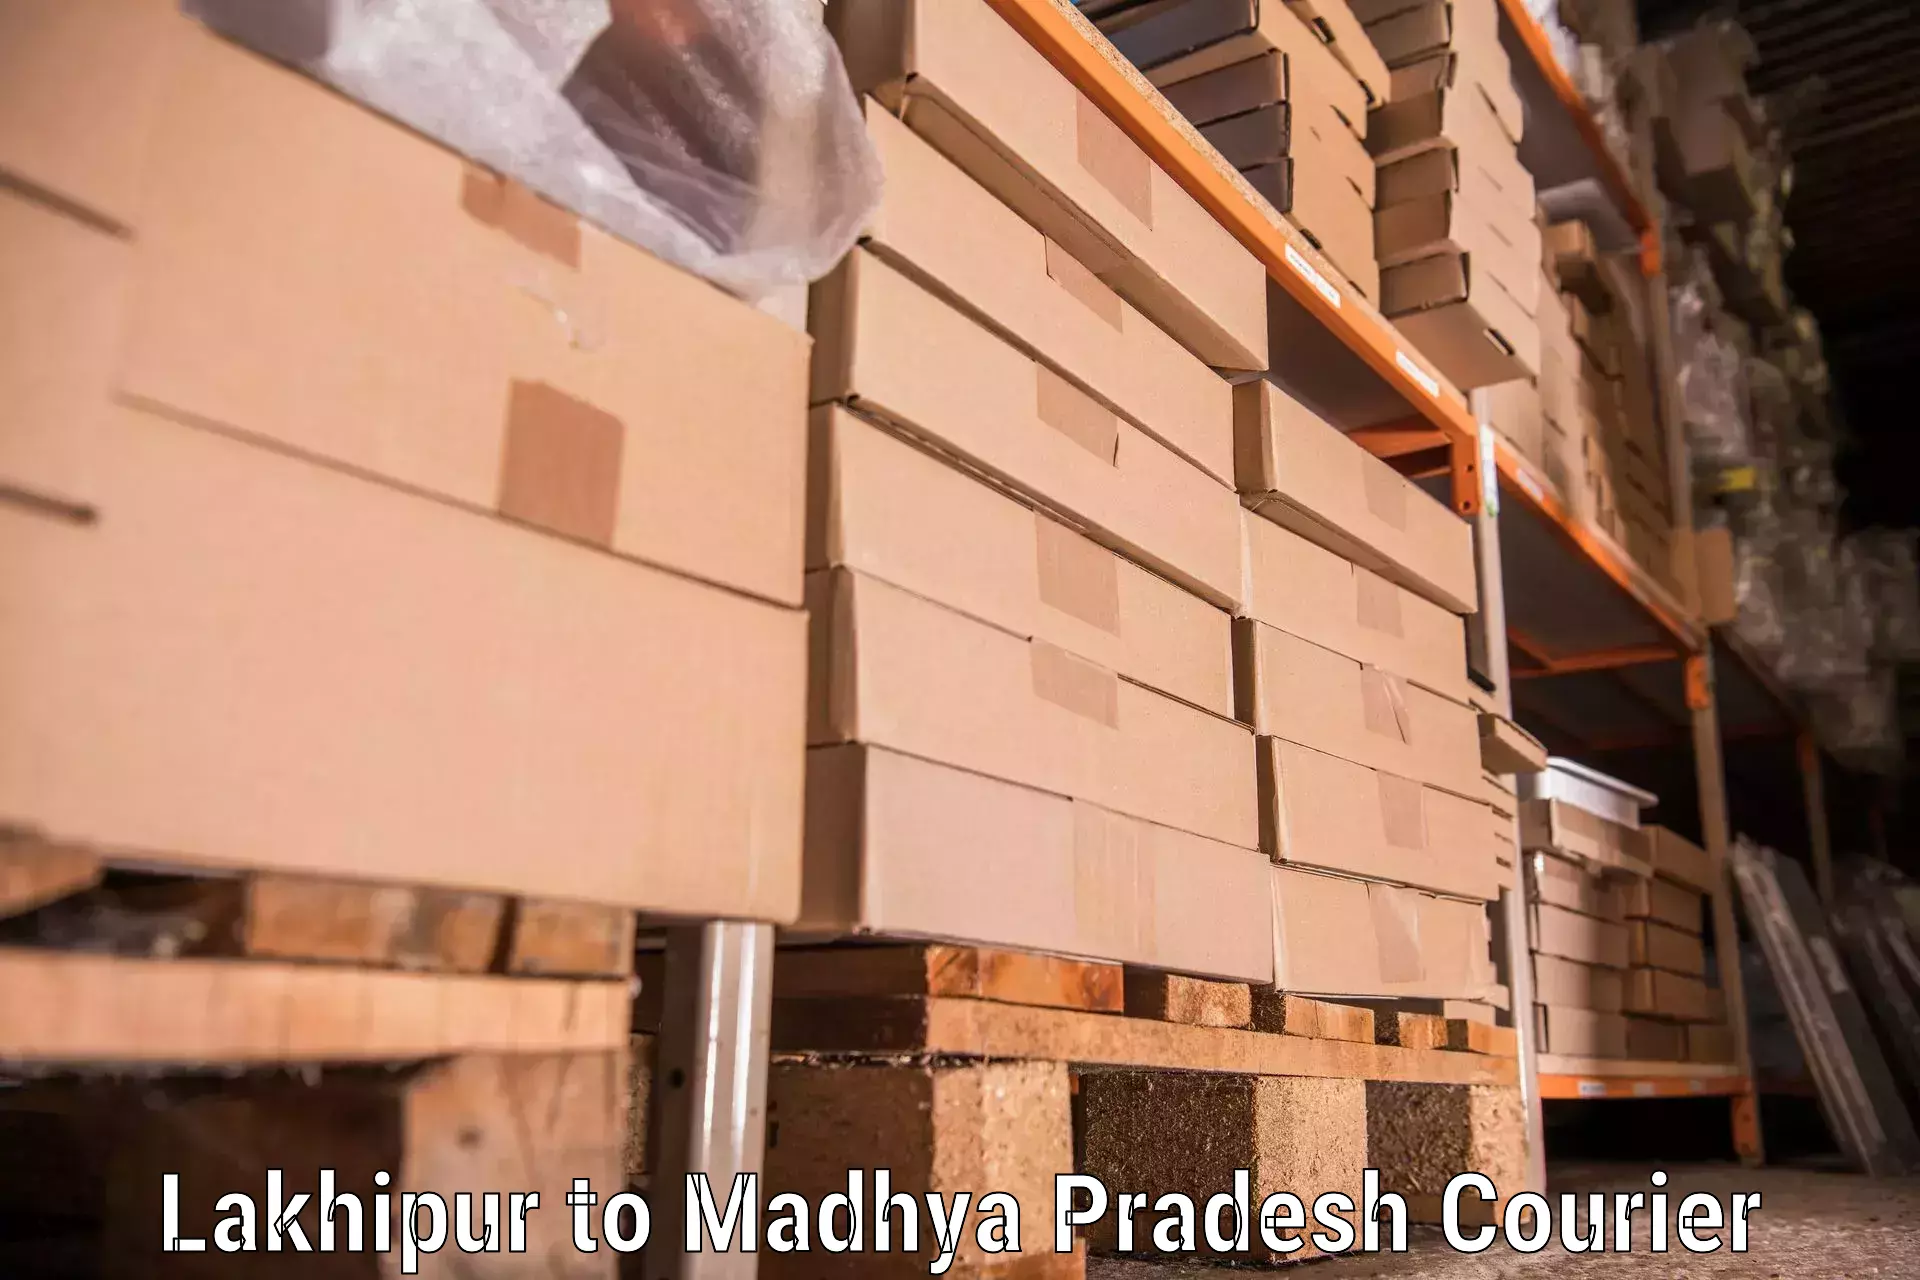 Professional moving company Lakhipur to Khategaon